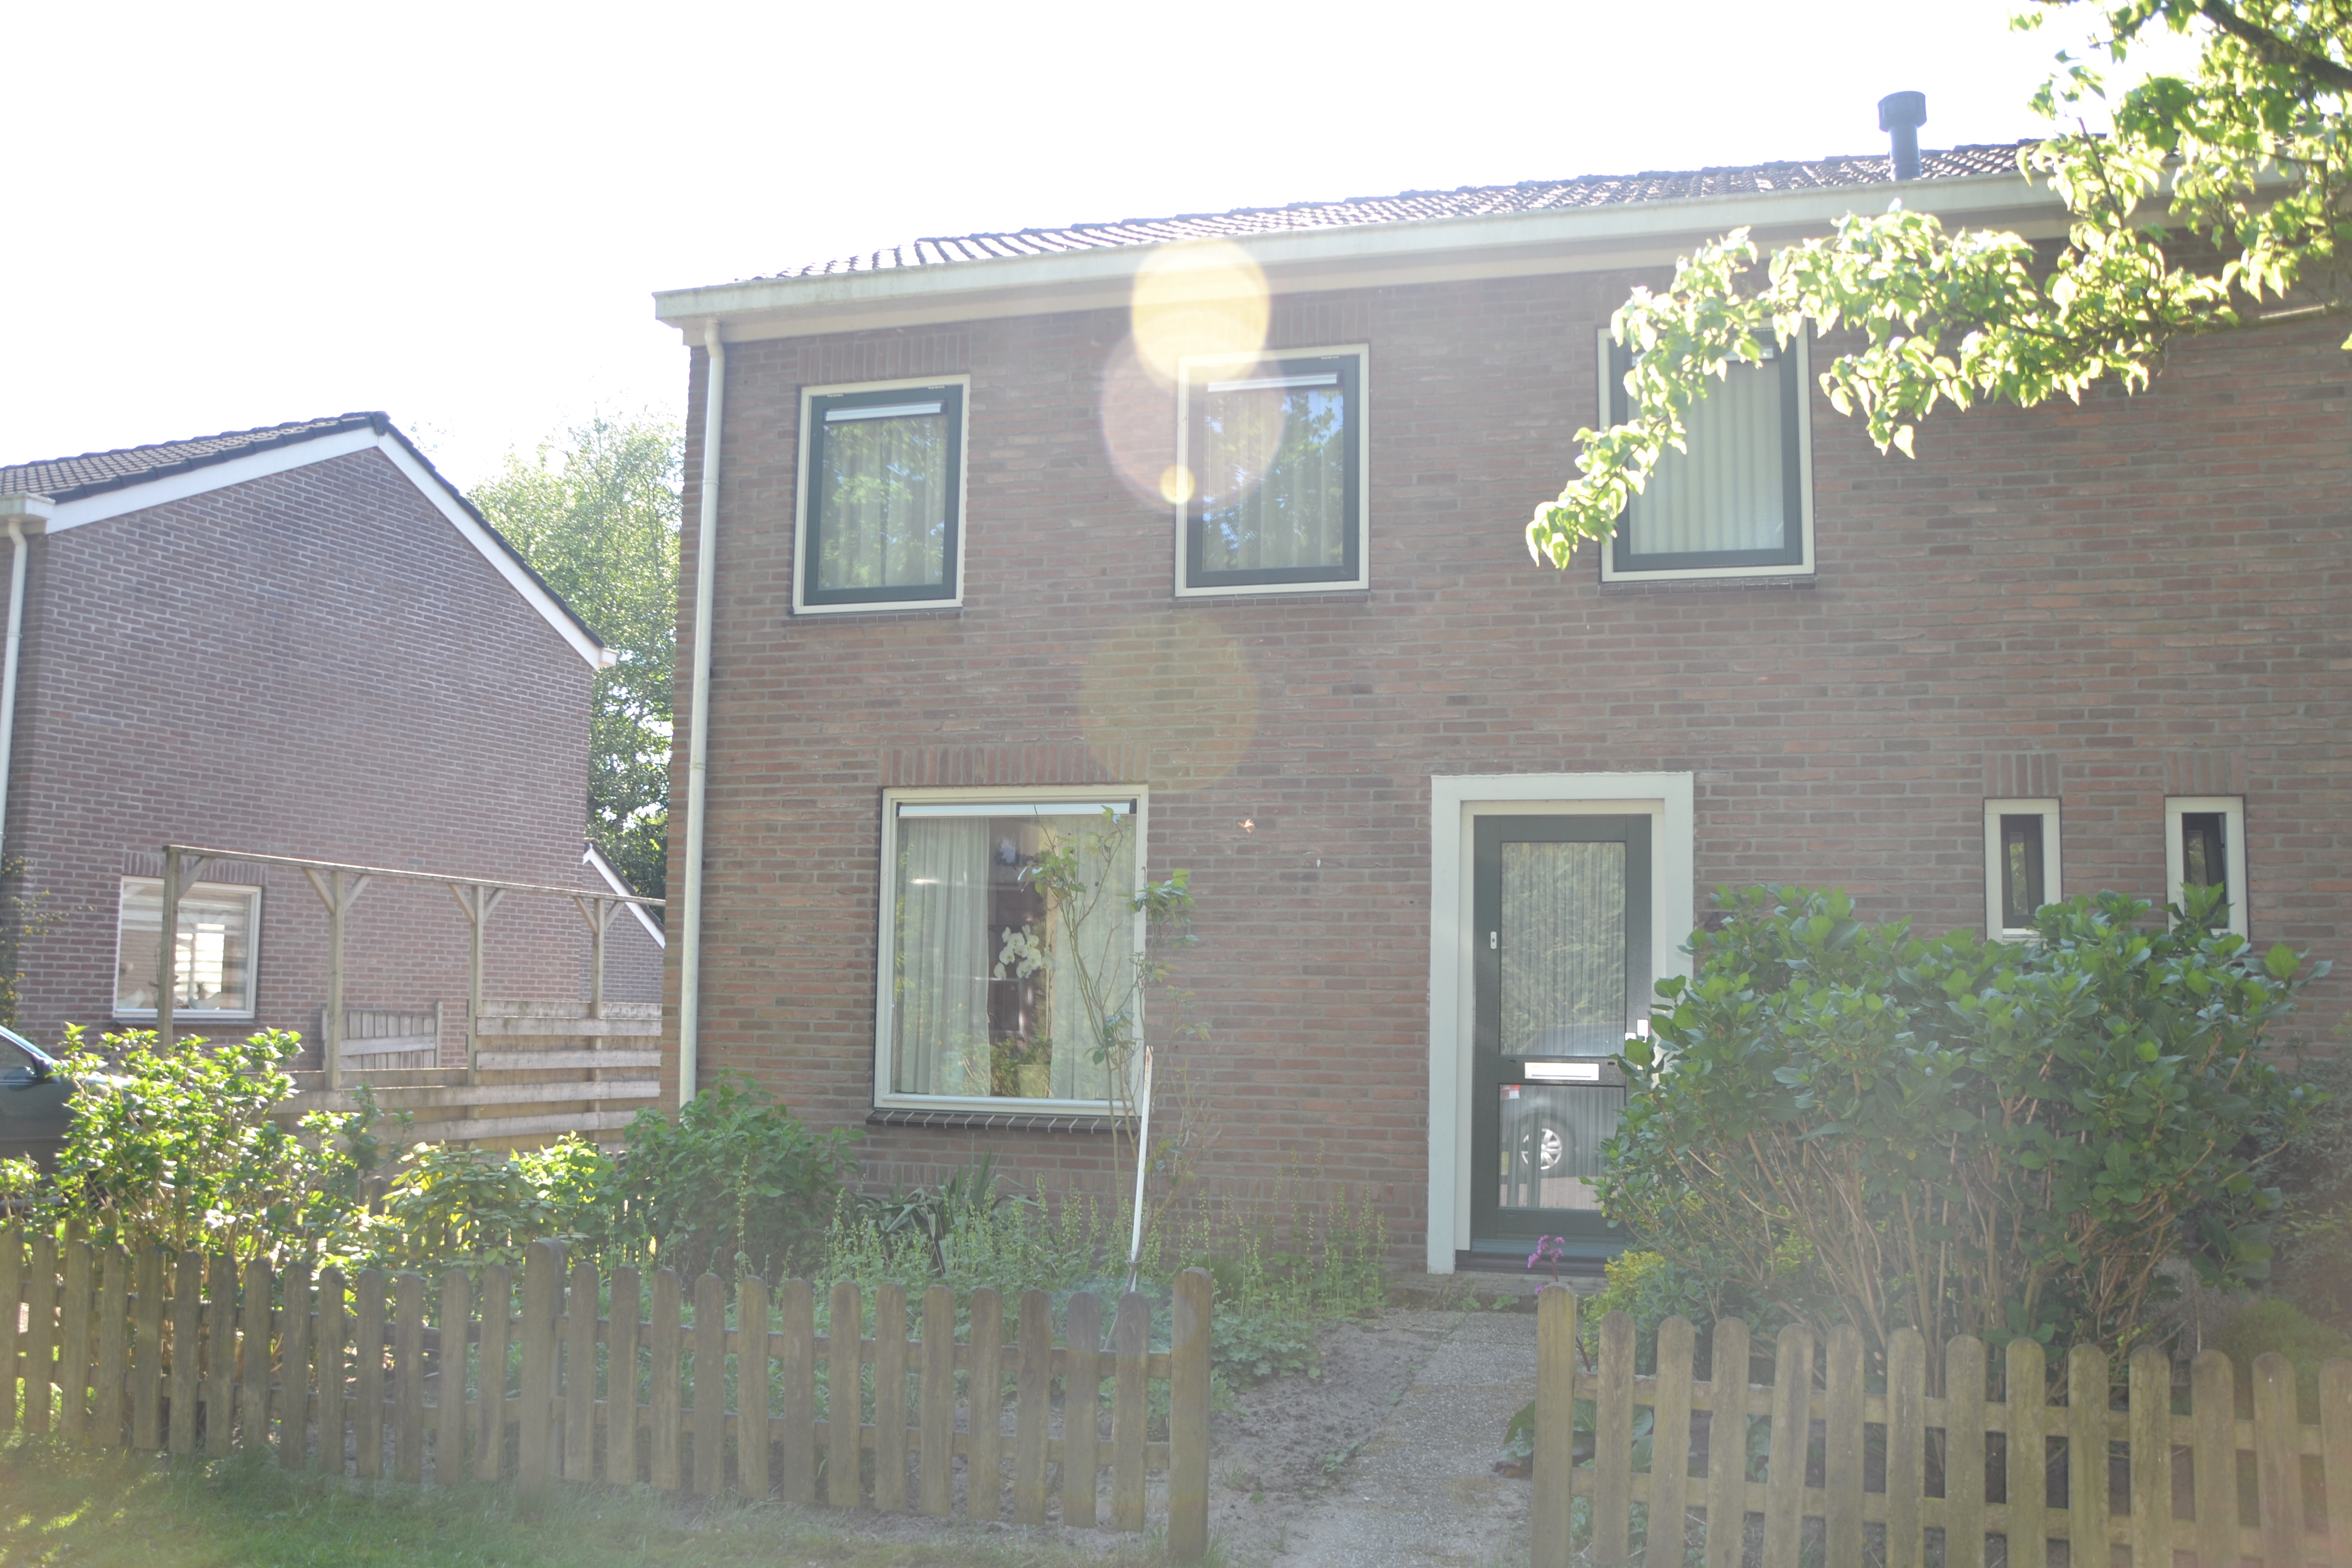 Volmolenstraat 47, 7854 PJ Aalden, Nederland